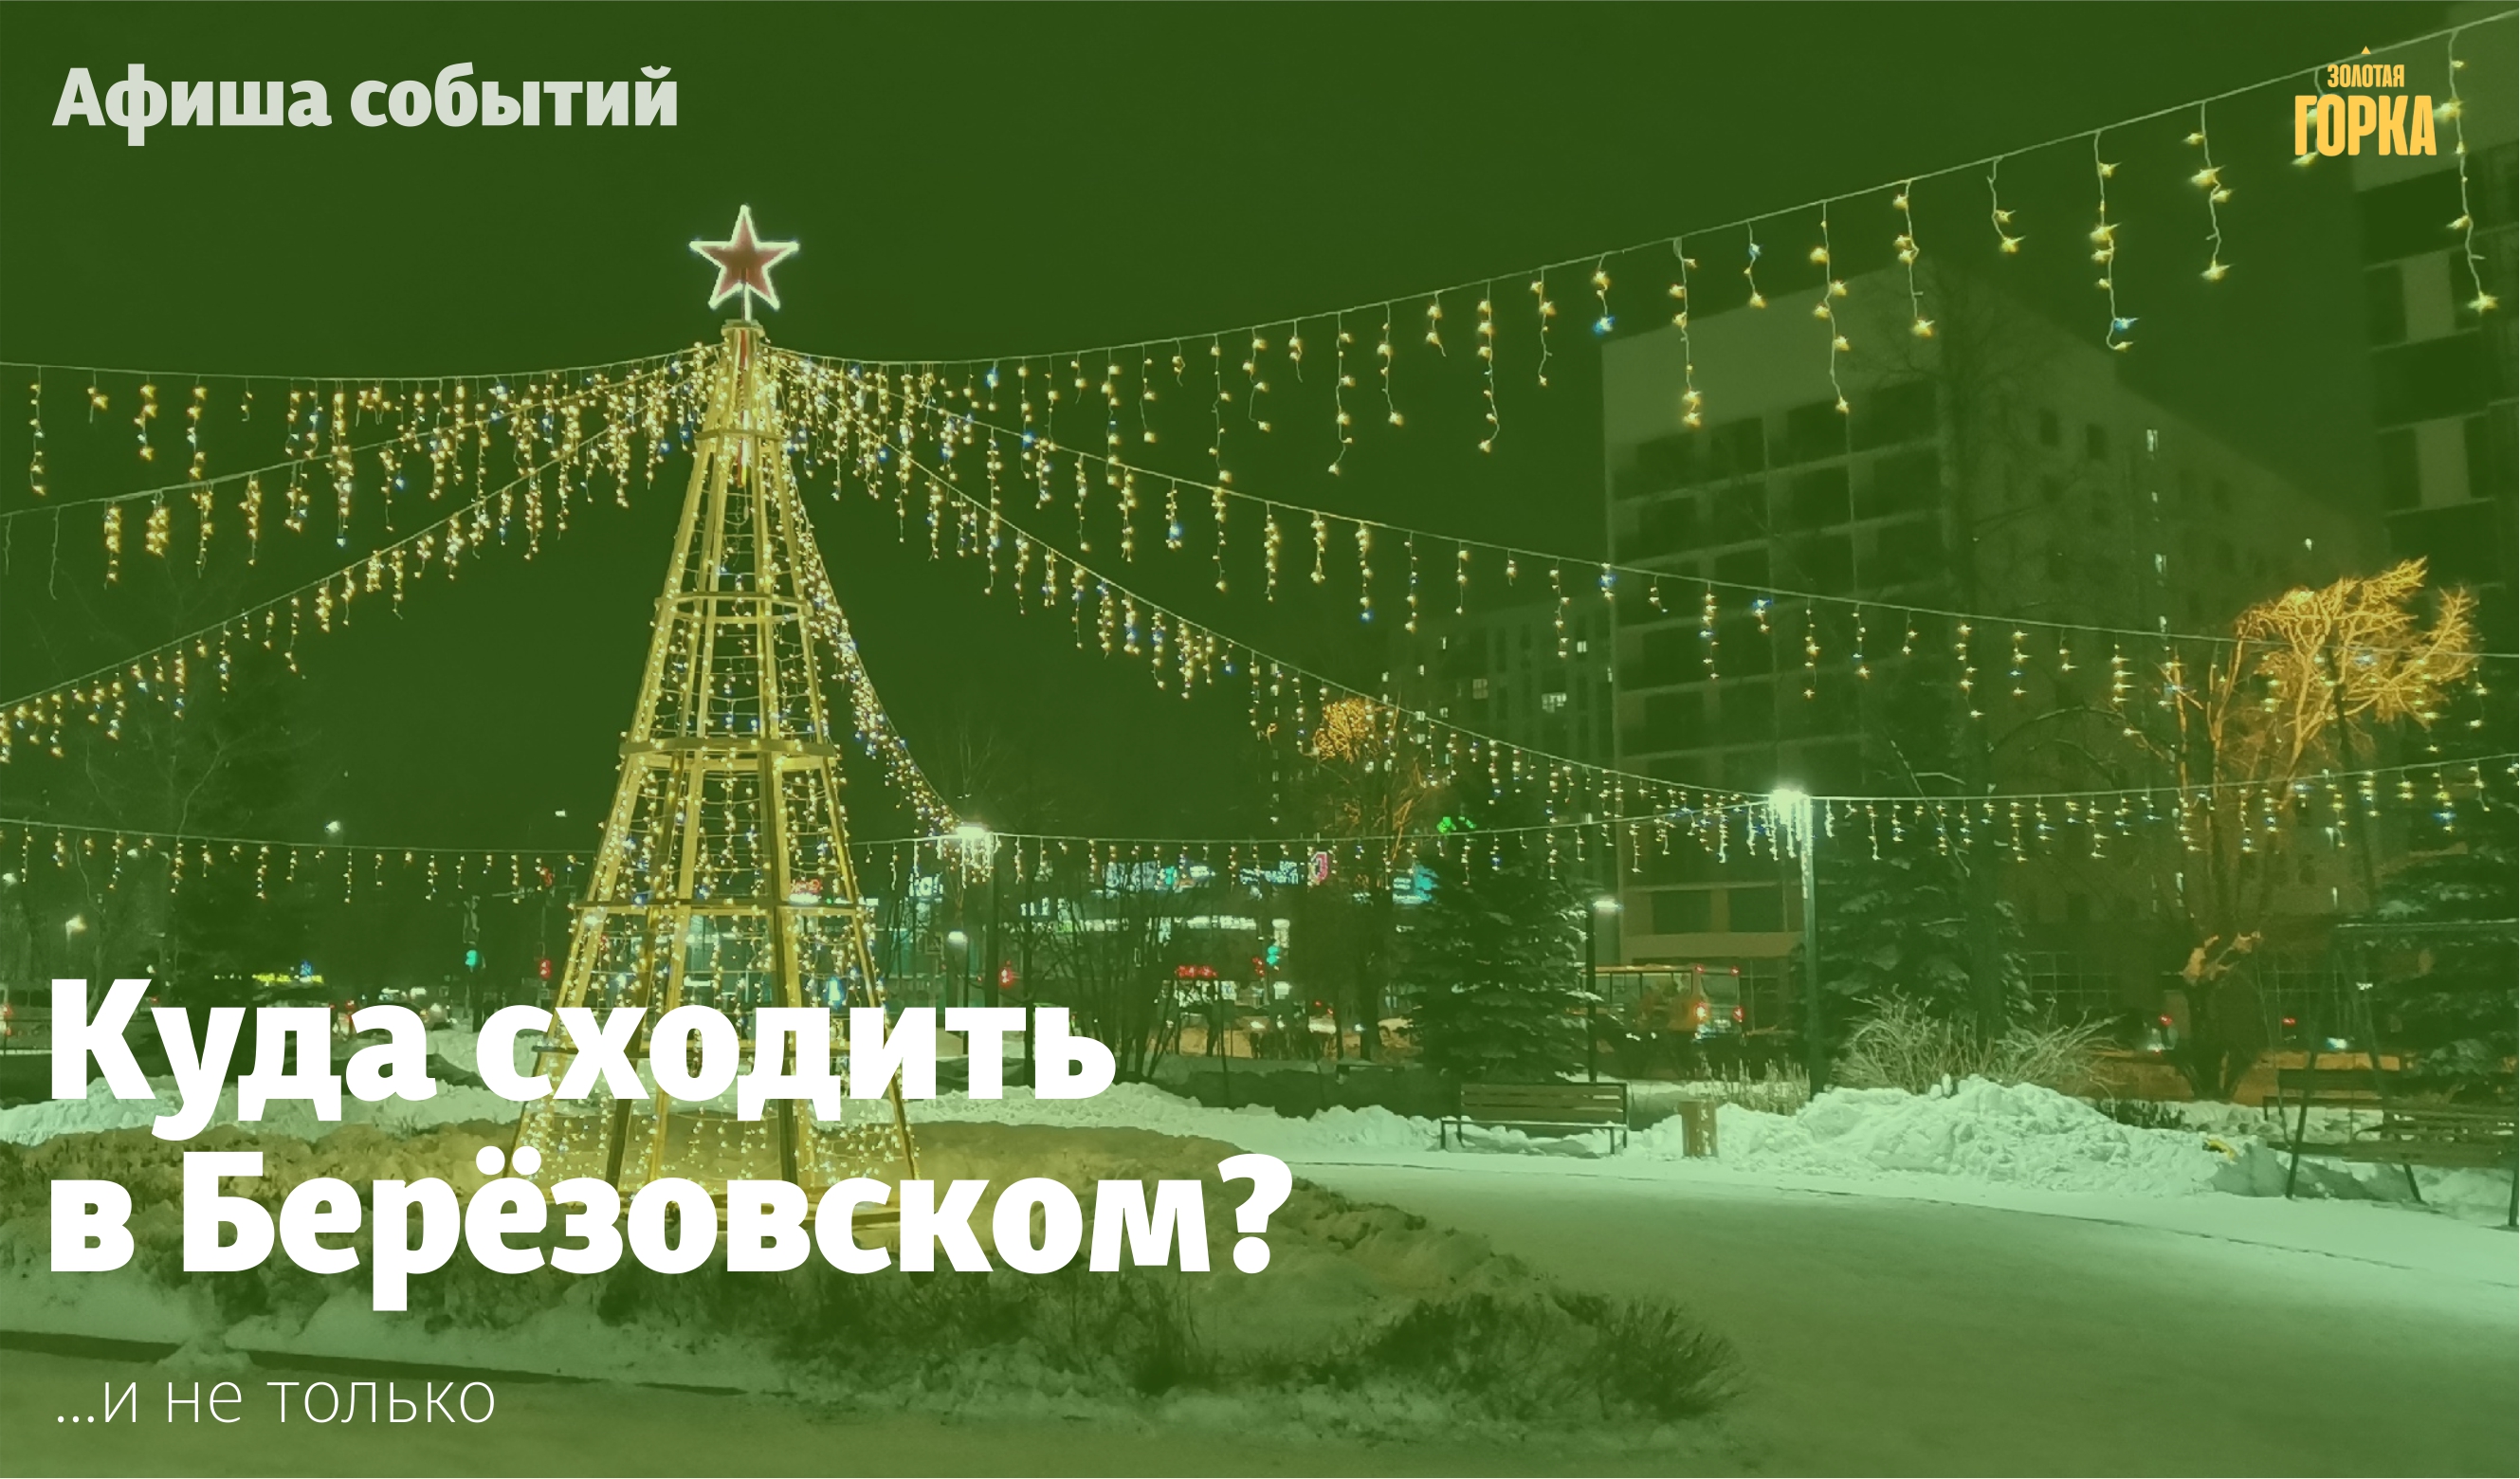 Мероприятия в Берёзовском с 22 по 30 декабря